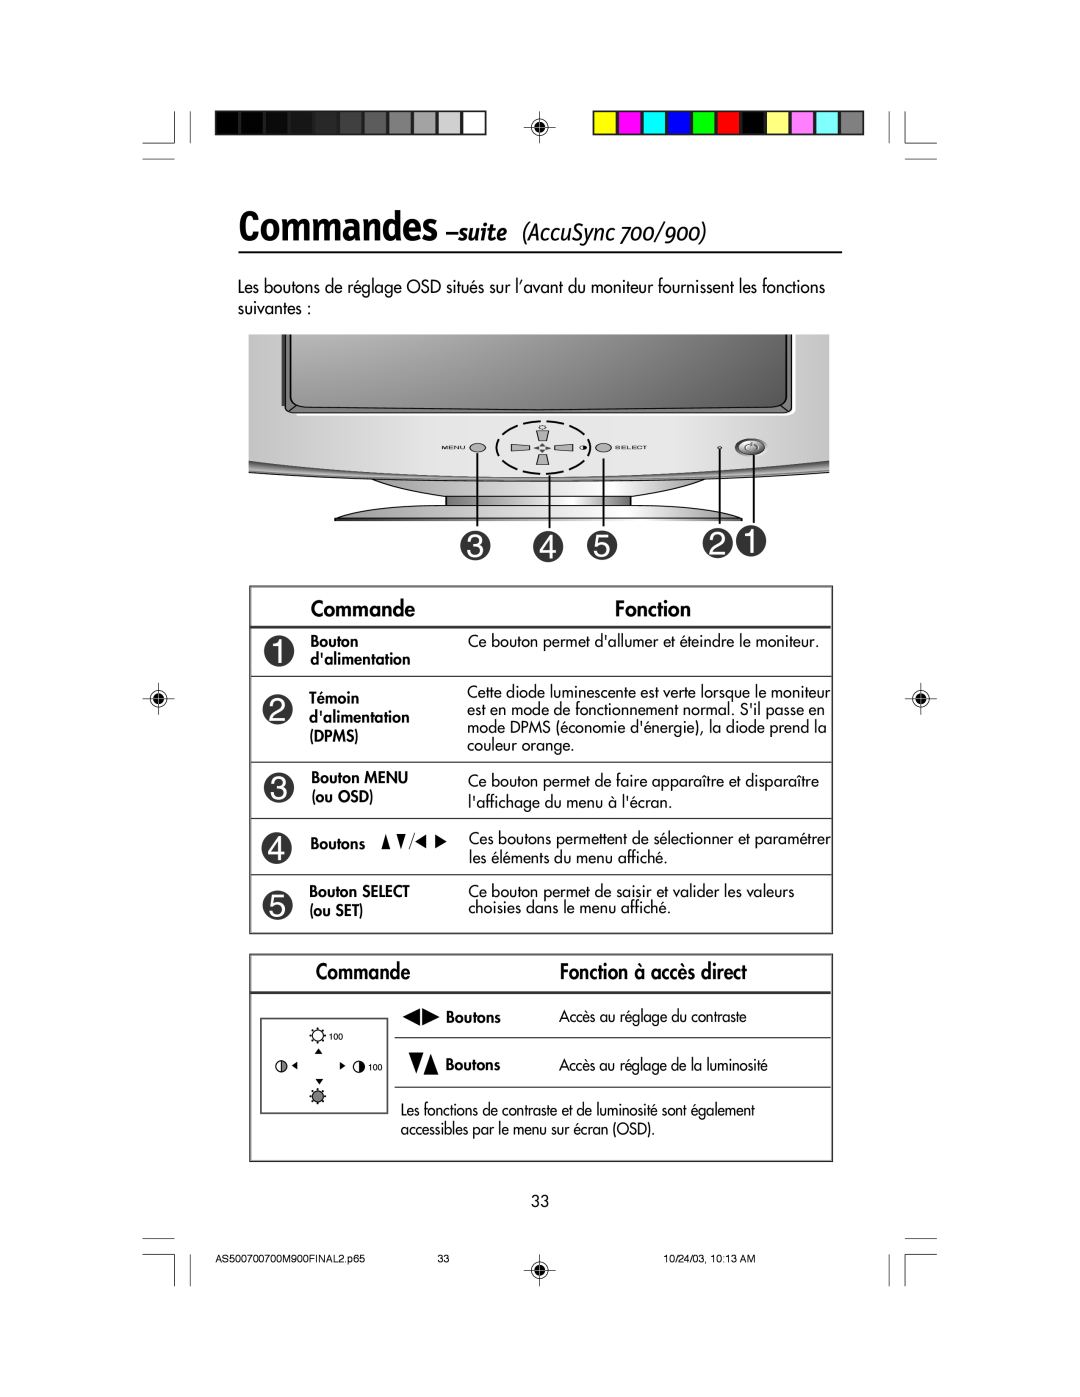 NEC 500 manual Commandes -suite AccuSync 700/900, Fonction, Accs au rŽglage de la luminositŽ 